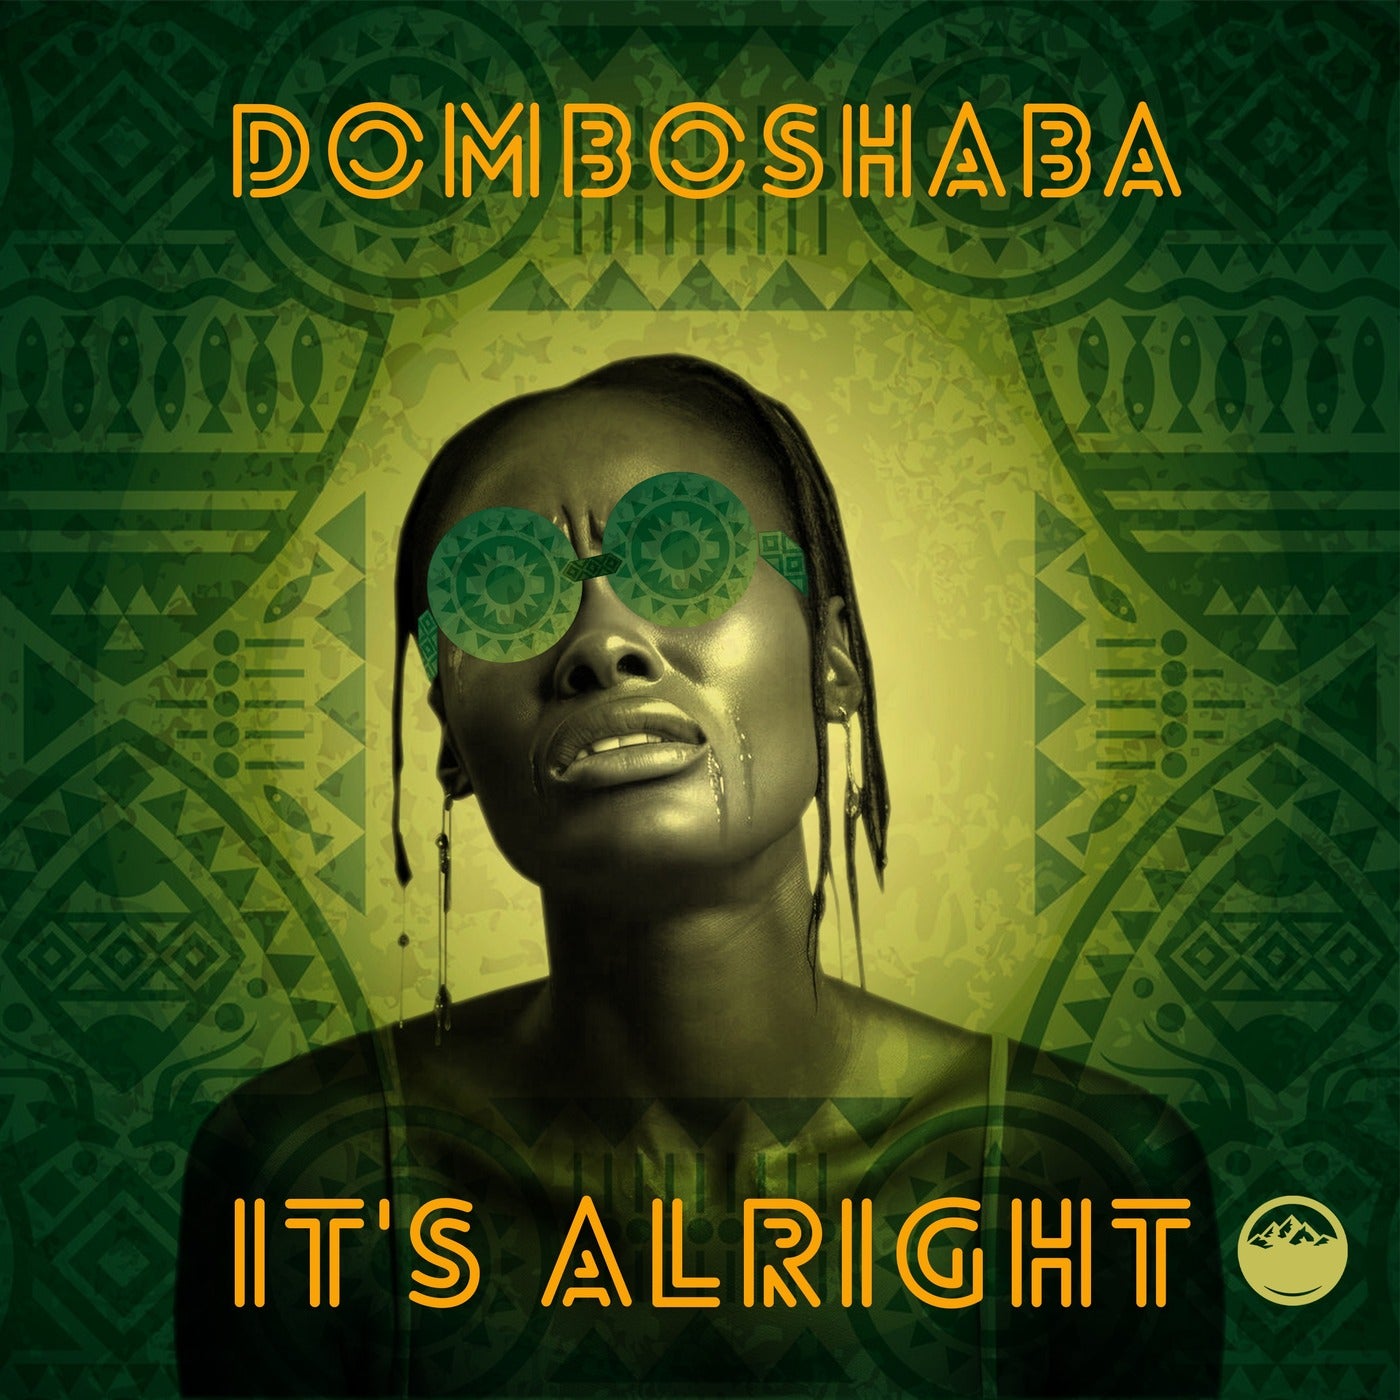 Domboshaba - It's Alright on Domboshaba Records